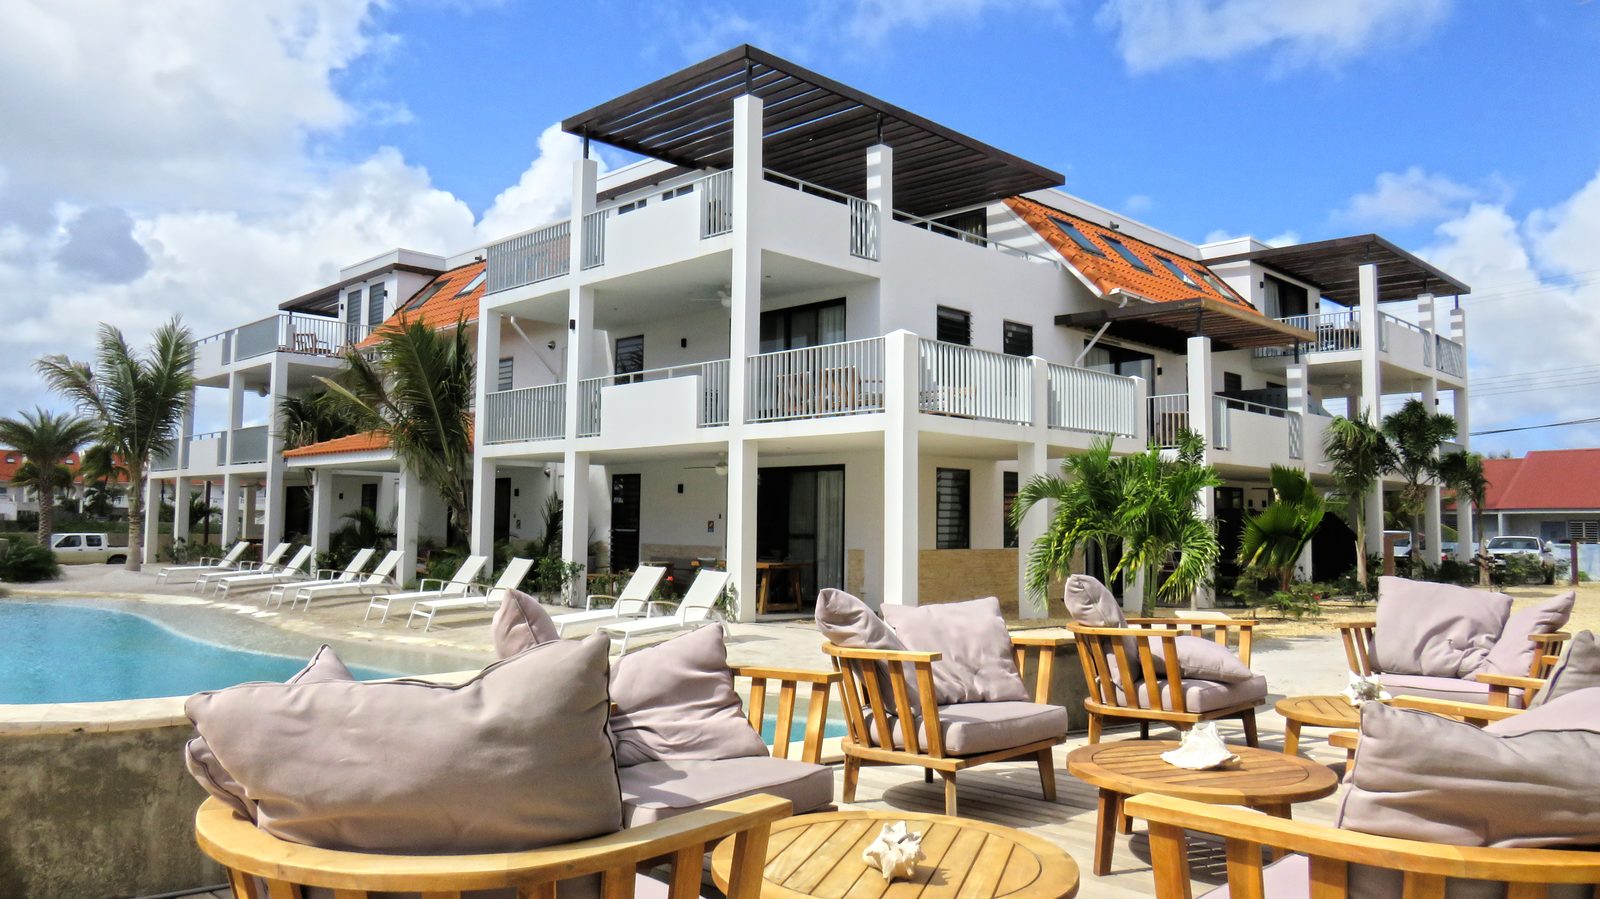 ¿Un bar en Bonaire? También puedes encontrarlo en Resort Bonaire. Tenemos un bar en la piscina, al lado de la playa de arena. Disfruta de un trago y un tentempié con nosotros.

